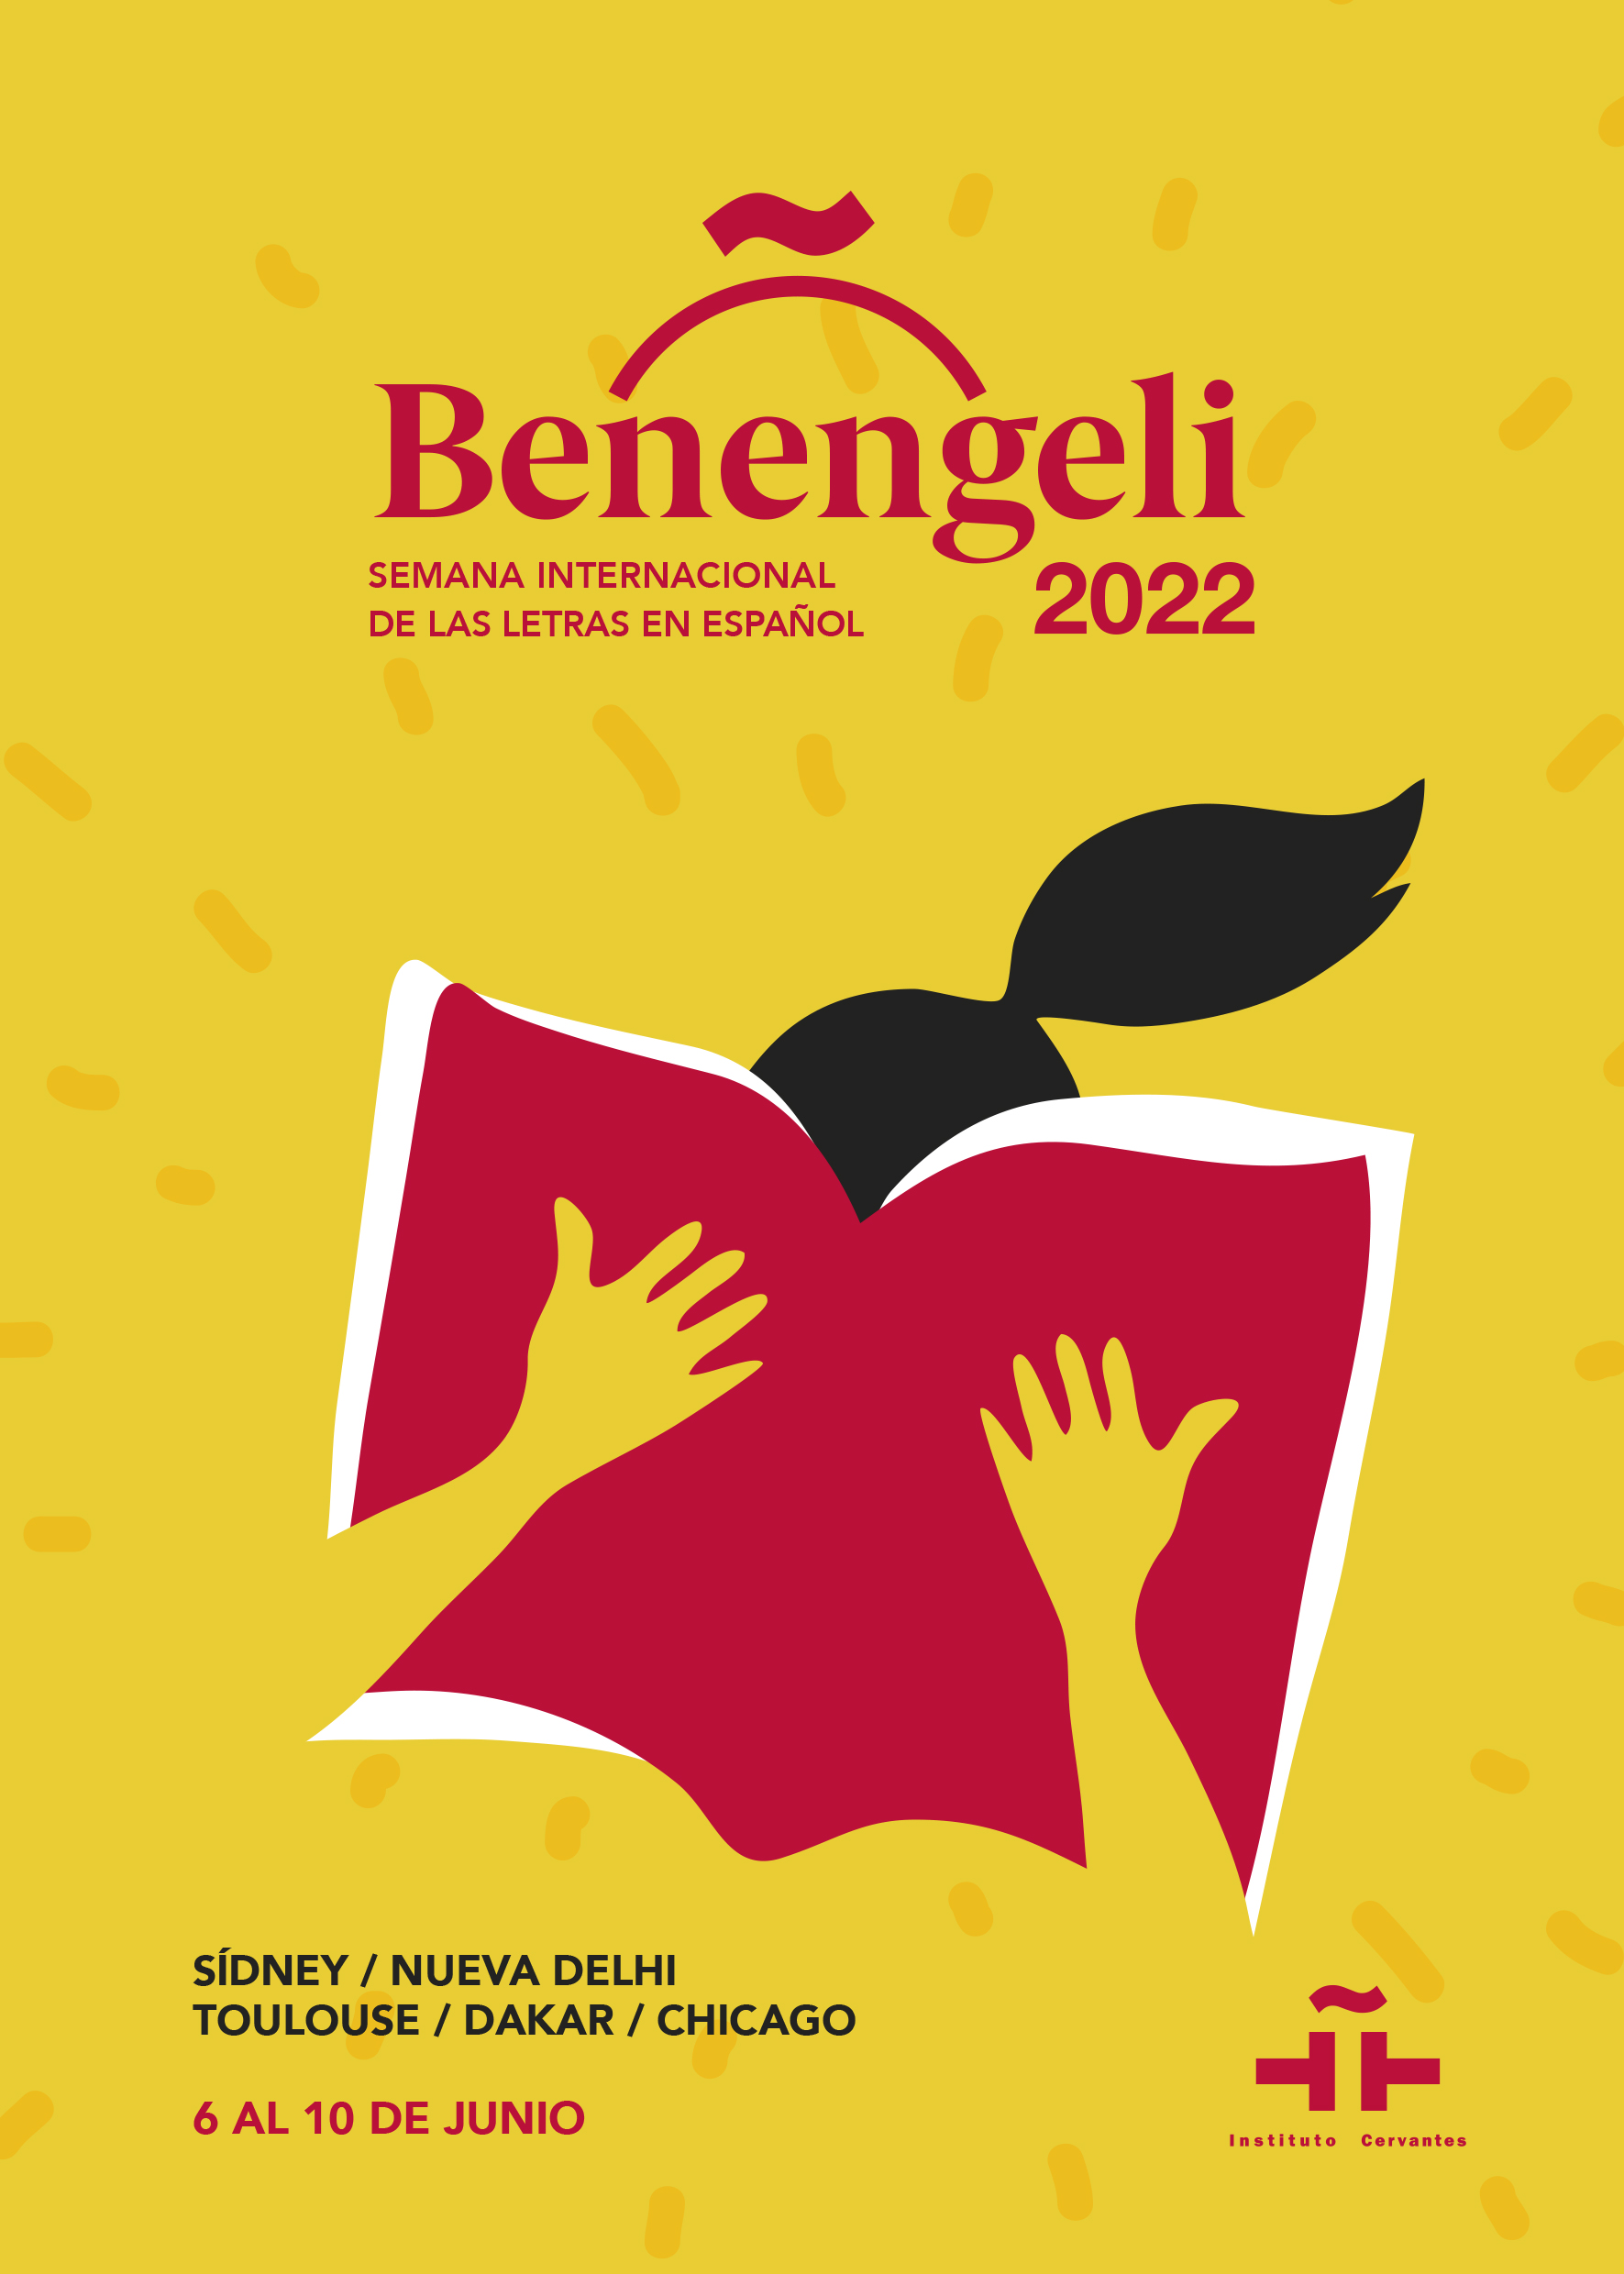 Benengeli 2022. Semana Internacional de las Letras en Español